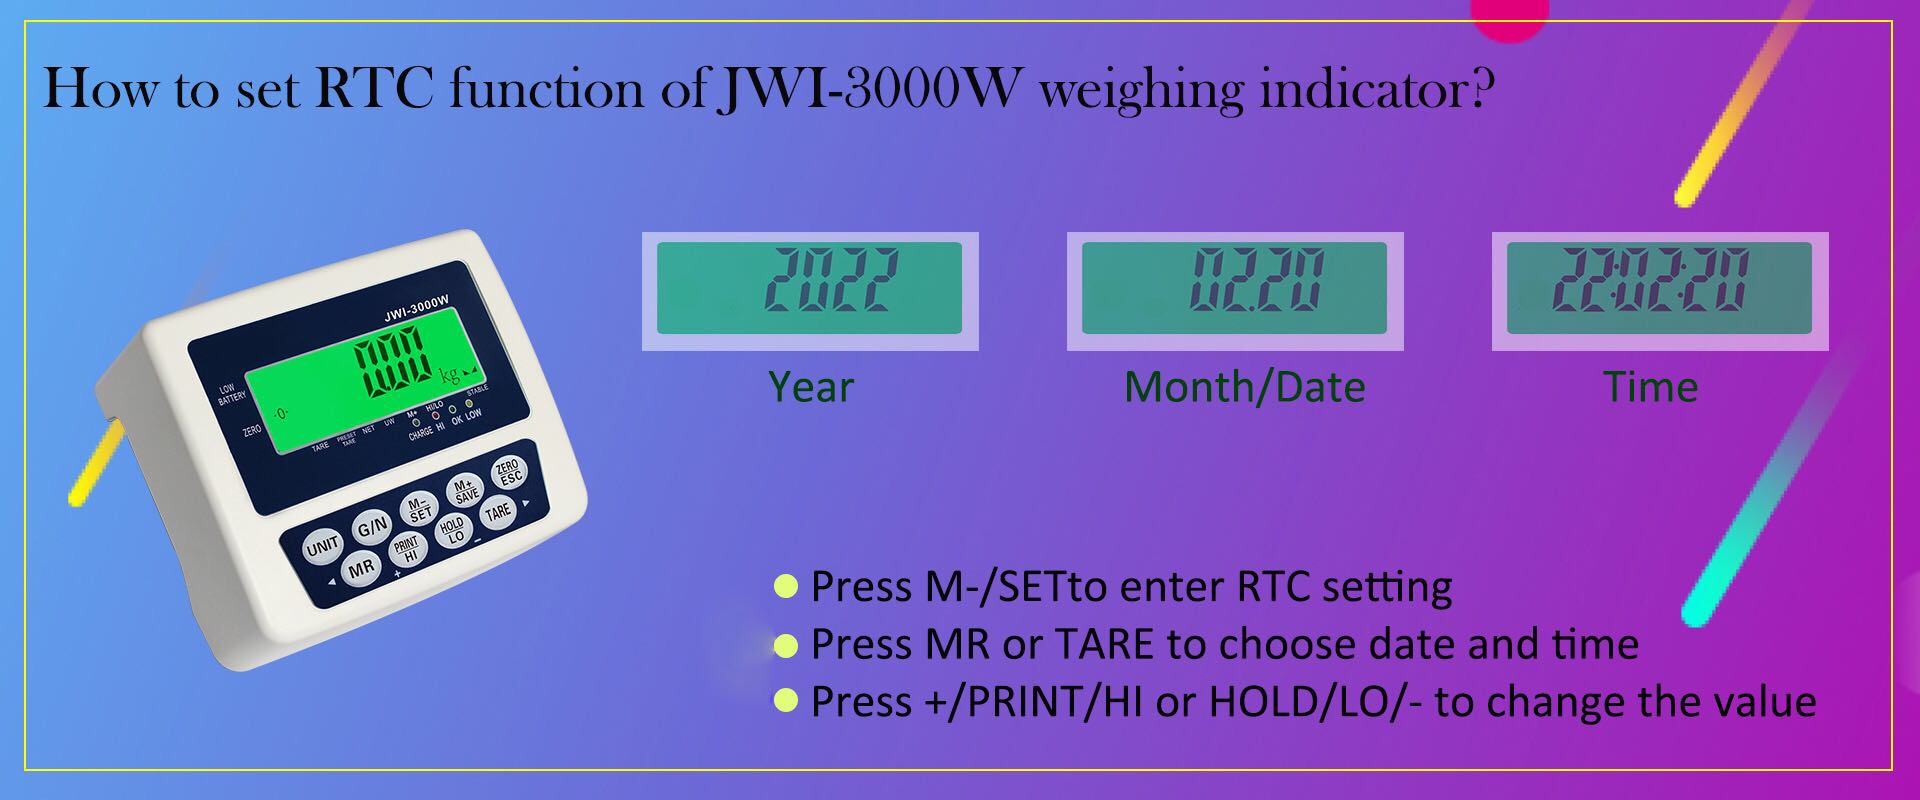 comment régler la fonction RTC de l'indicateur de pesage industriel JWI-3000W